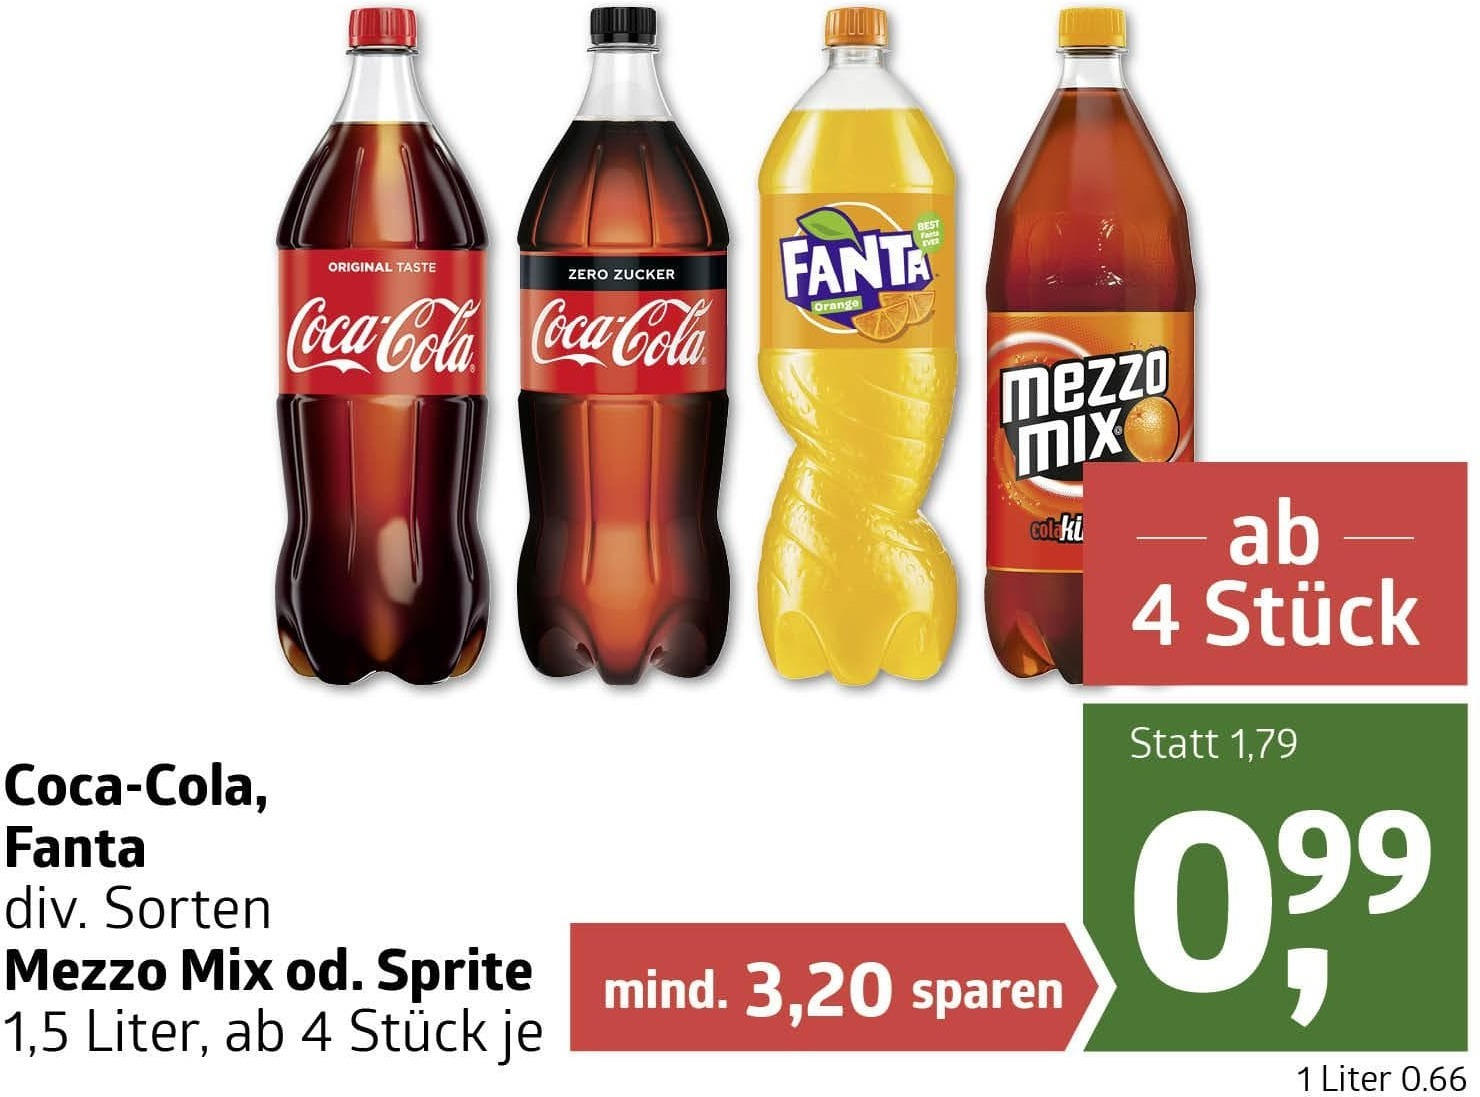 statt Sprite 0,99 PENNERSTORFER Online Mix Fanta, € nur für ✔️ € oder 1,79 von Mezzo Coca-Cola, ADEG